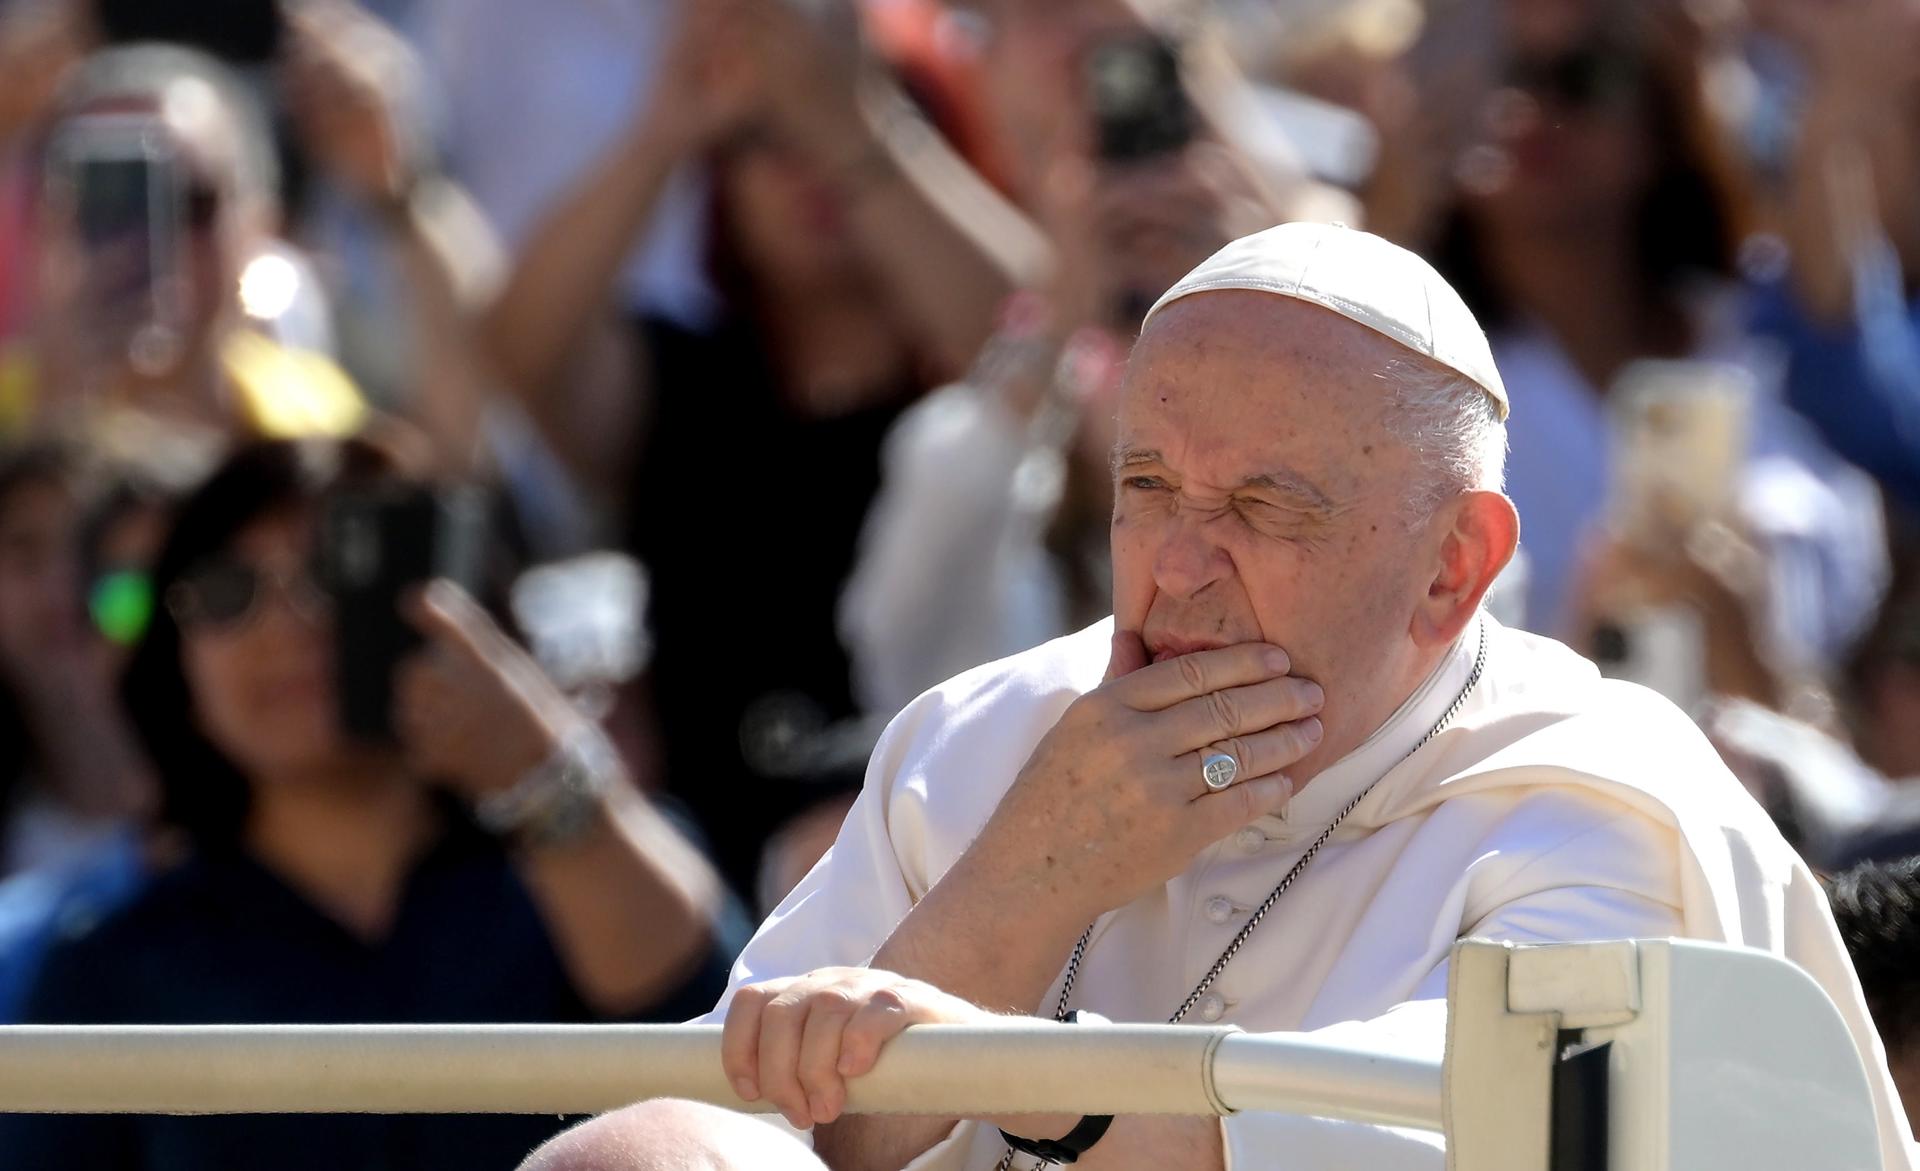 El papa Francisco será operado de urgencia por un riesgo de obstrucción intestinal